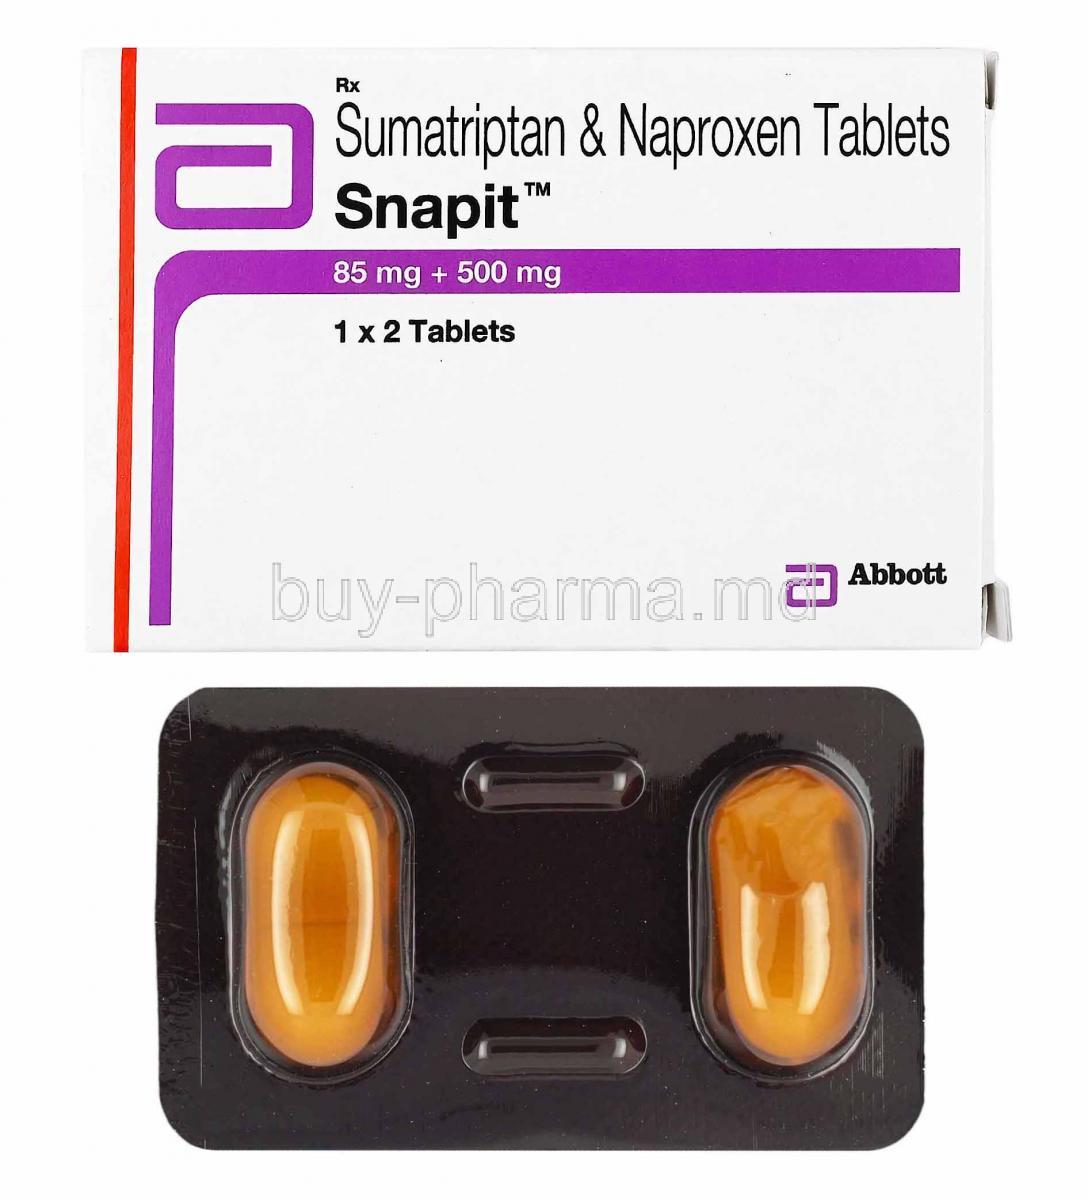 Snapit, Sumatriptan and Naproxen box and tablets